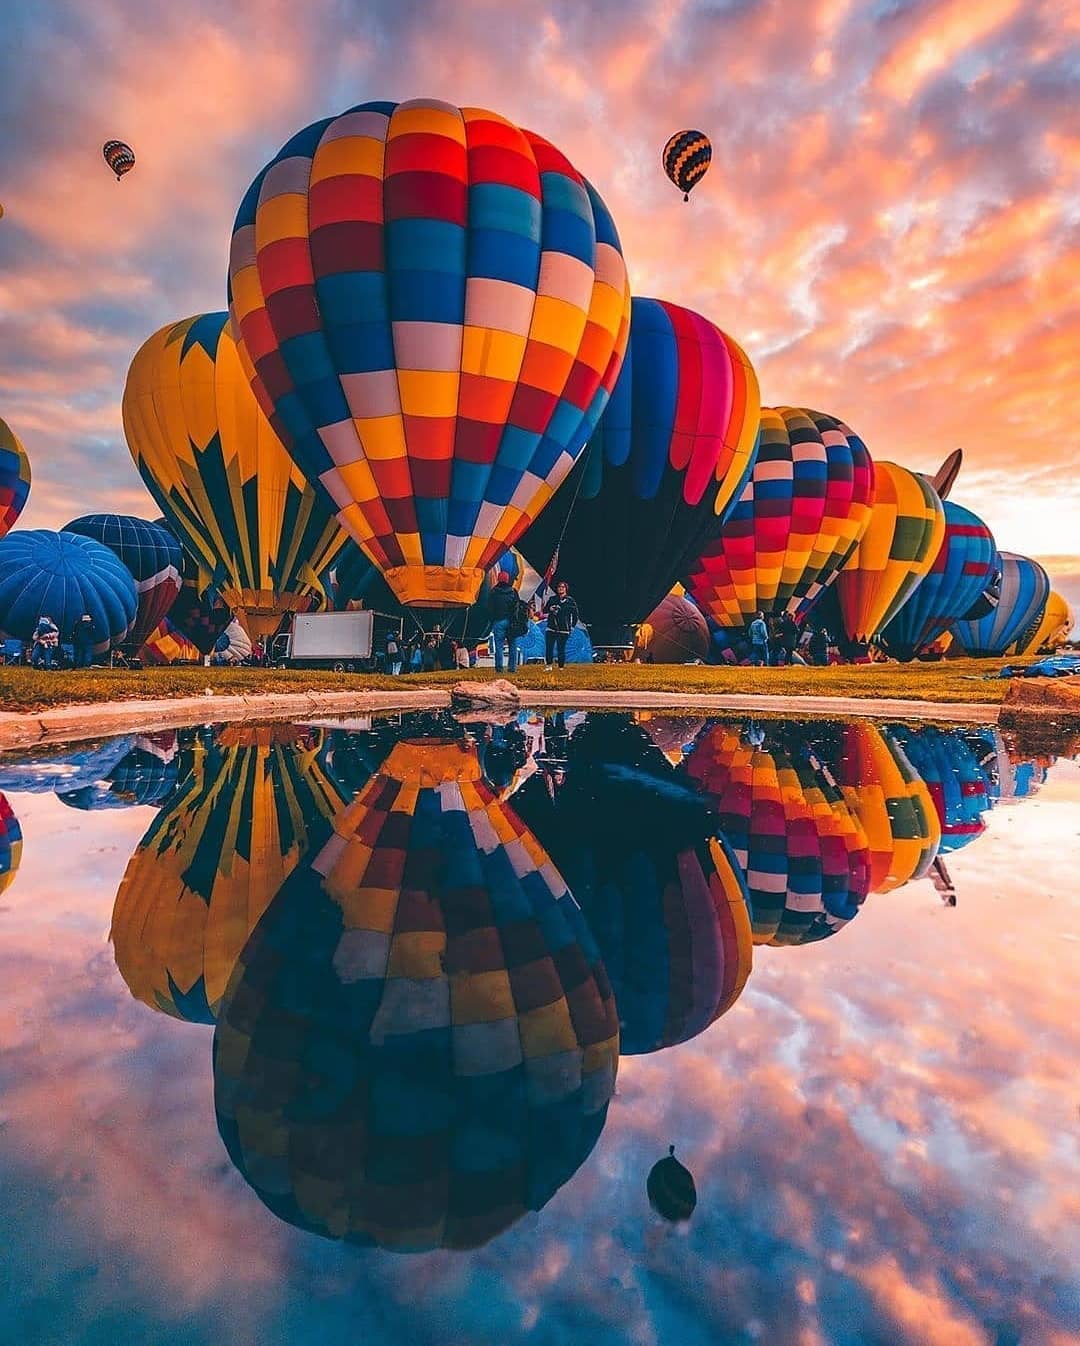 Đây là lễ hội khinh khí cầu lớn nhất nước Mỹ, được tổ chức từ tháng 10 và kéo dài 9 ngày. Ảnh: @blogdobalonismo